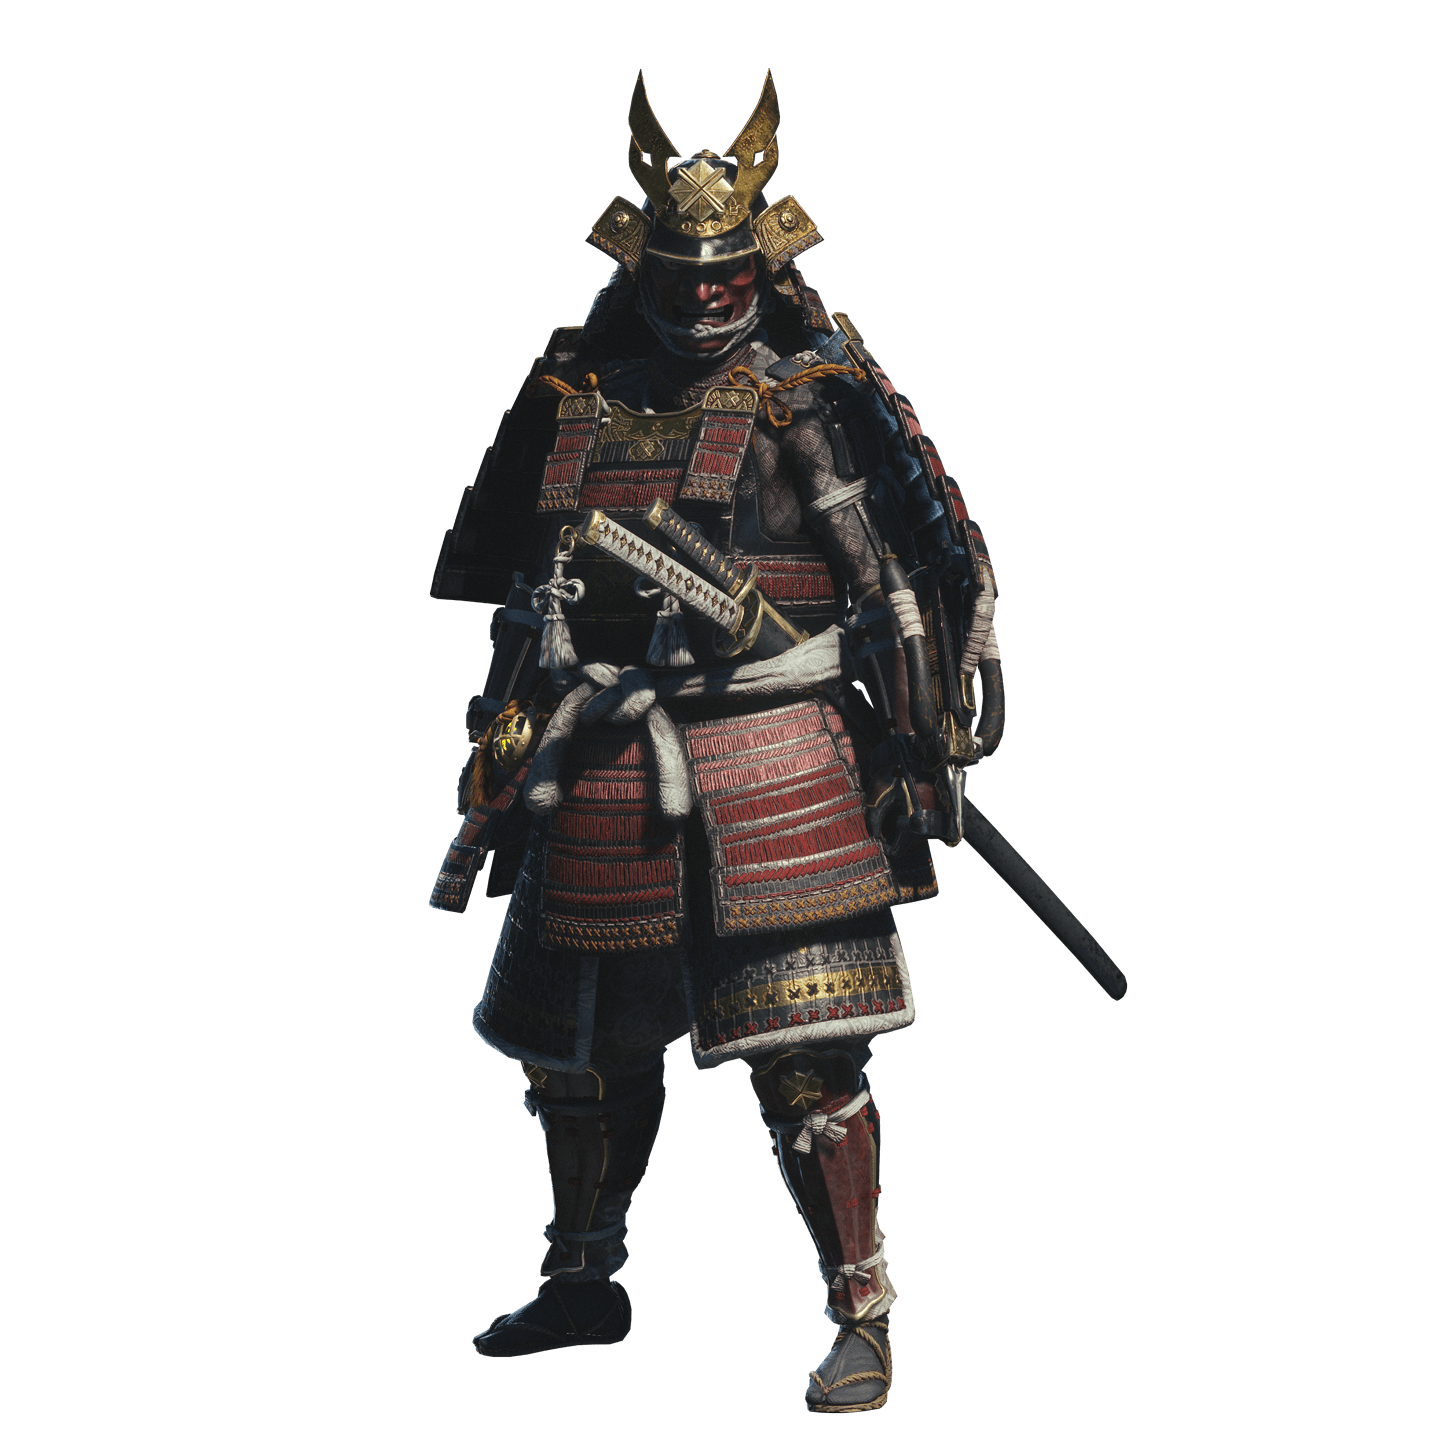 Samurai Transparent Image